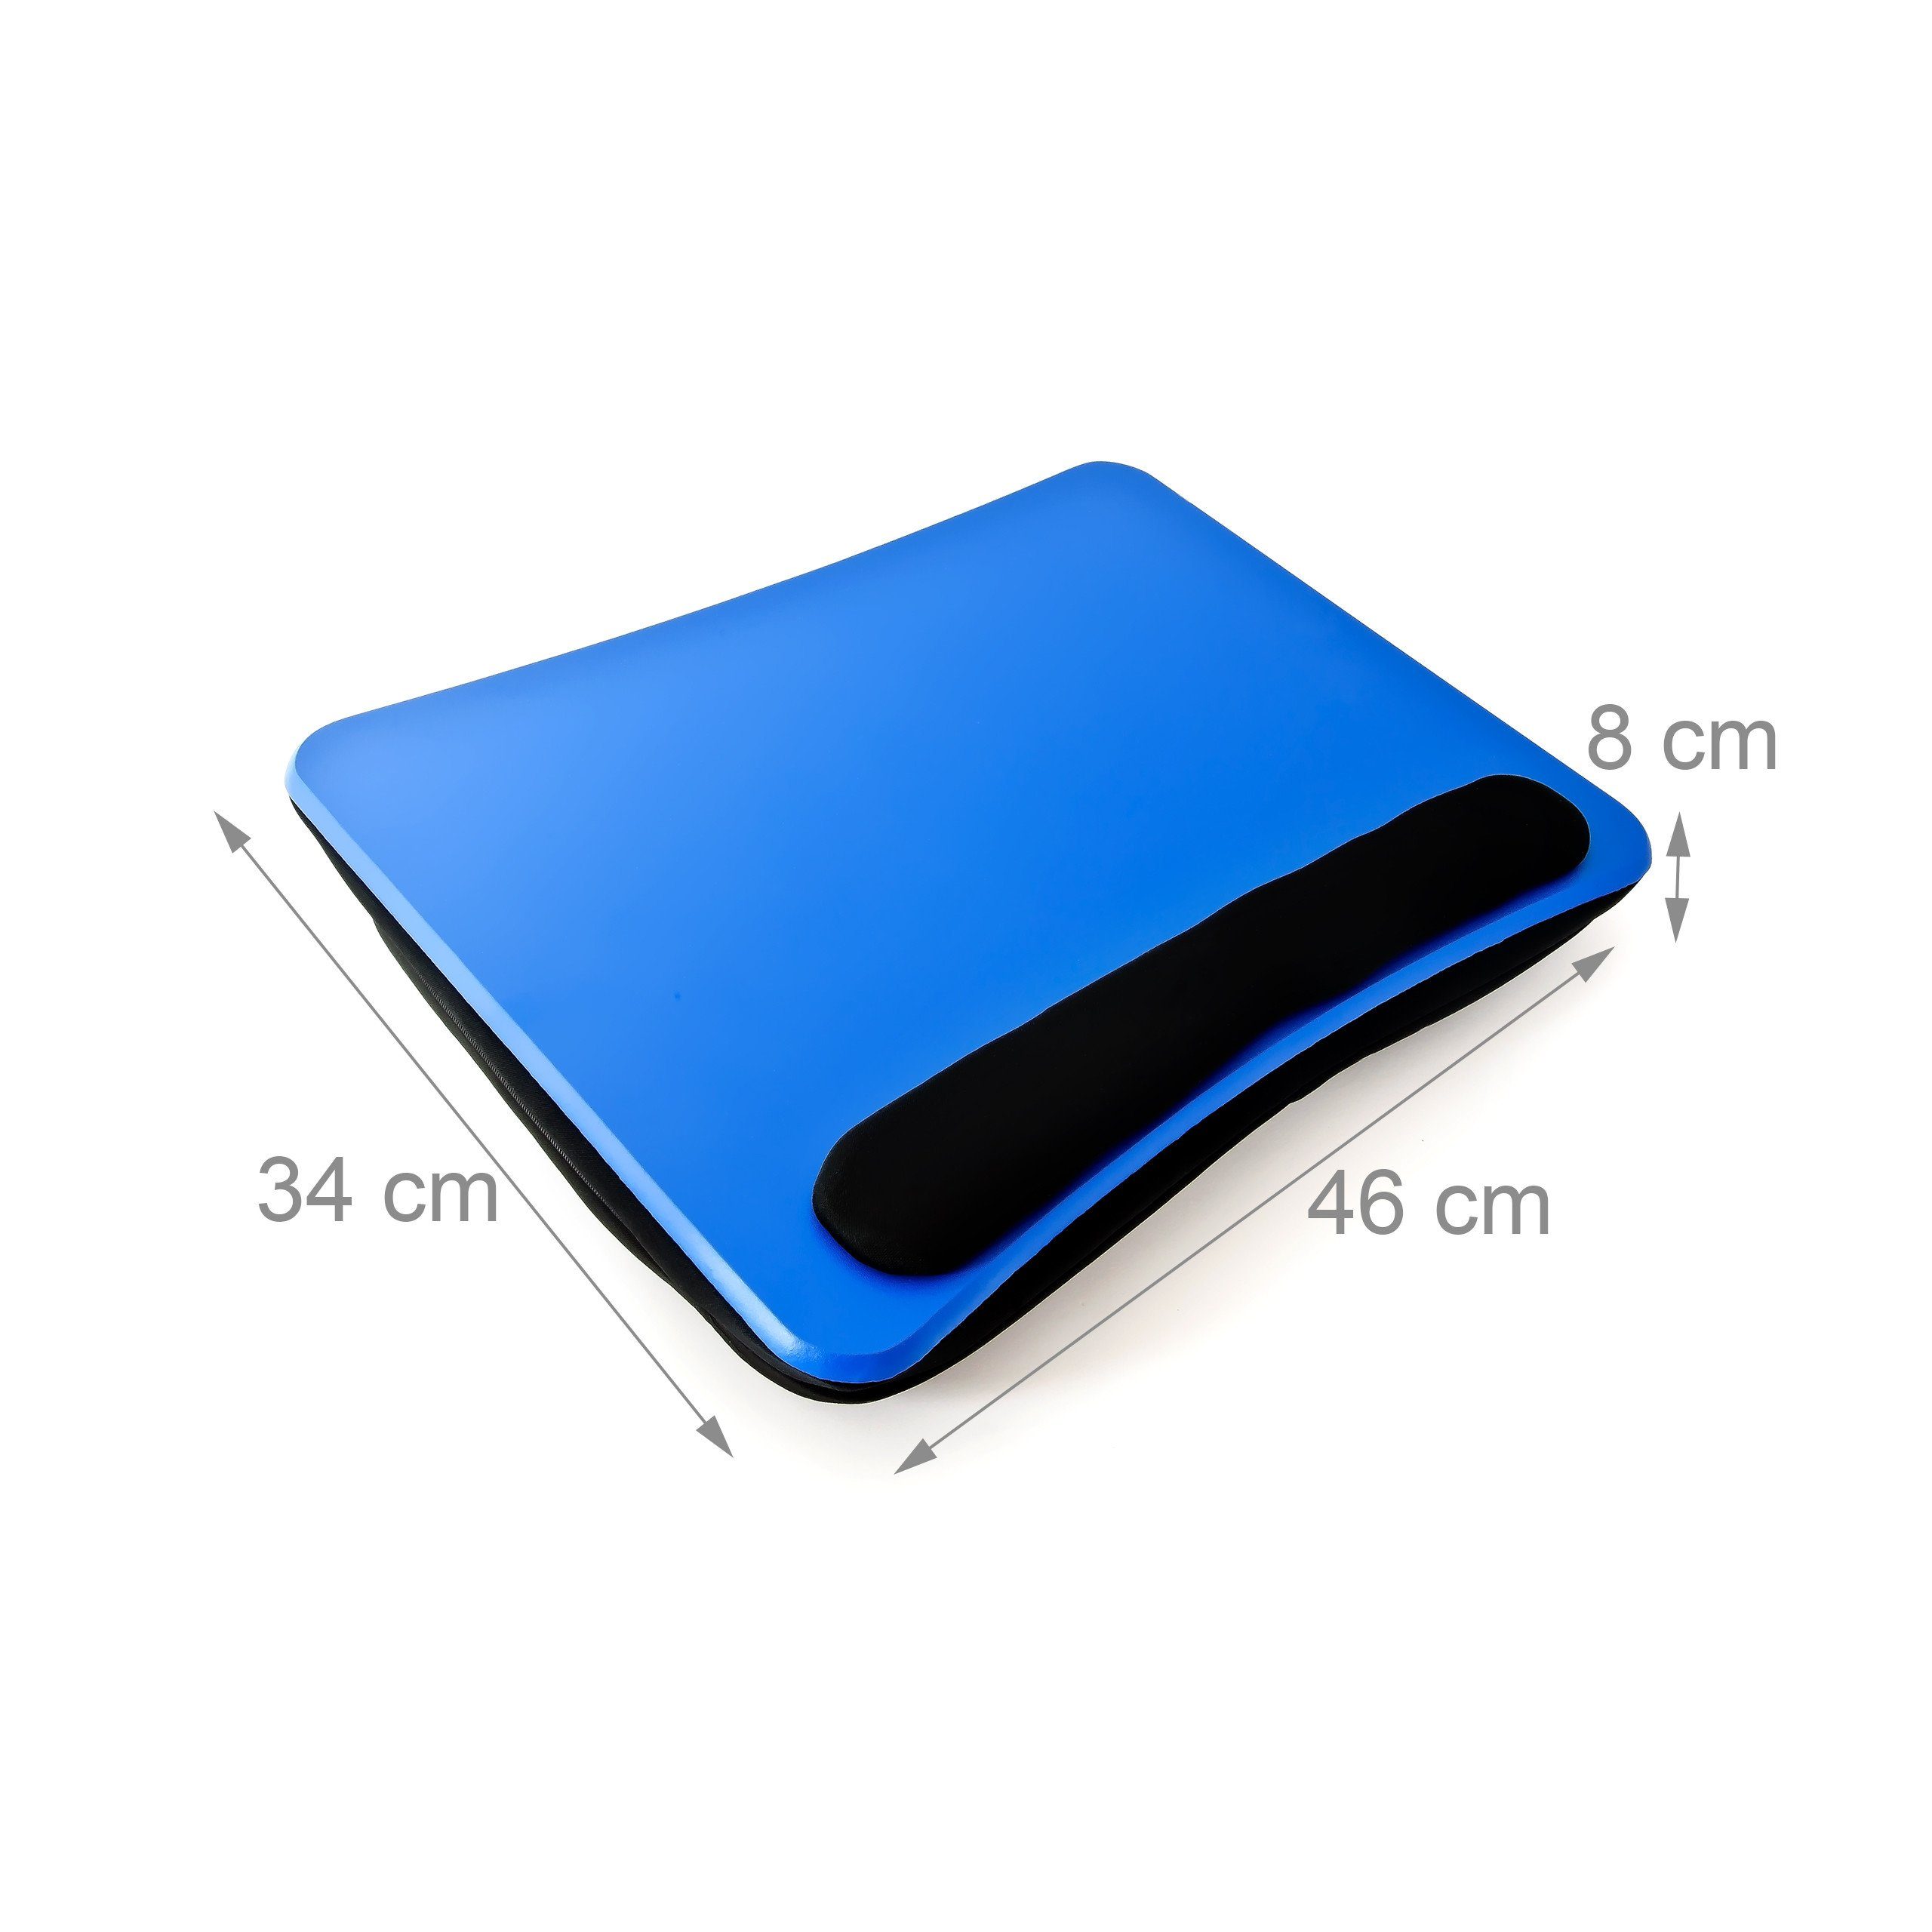 relaxdays Laptop Tablett Laptopkissen mit Handauflage Faserplatte Blau